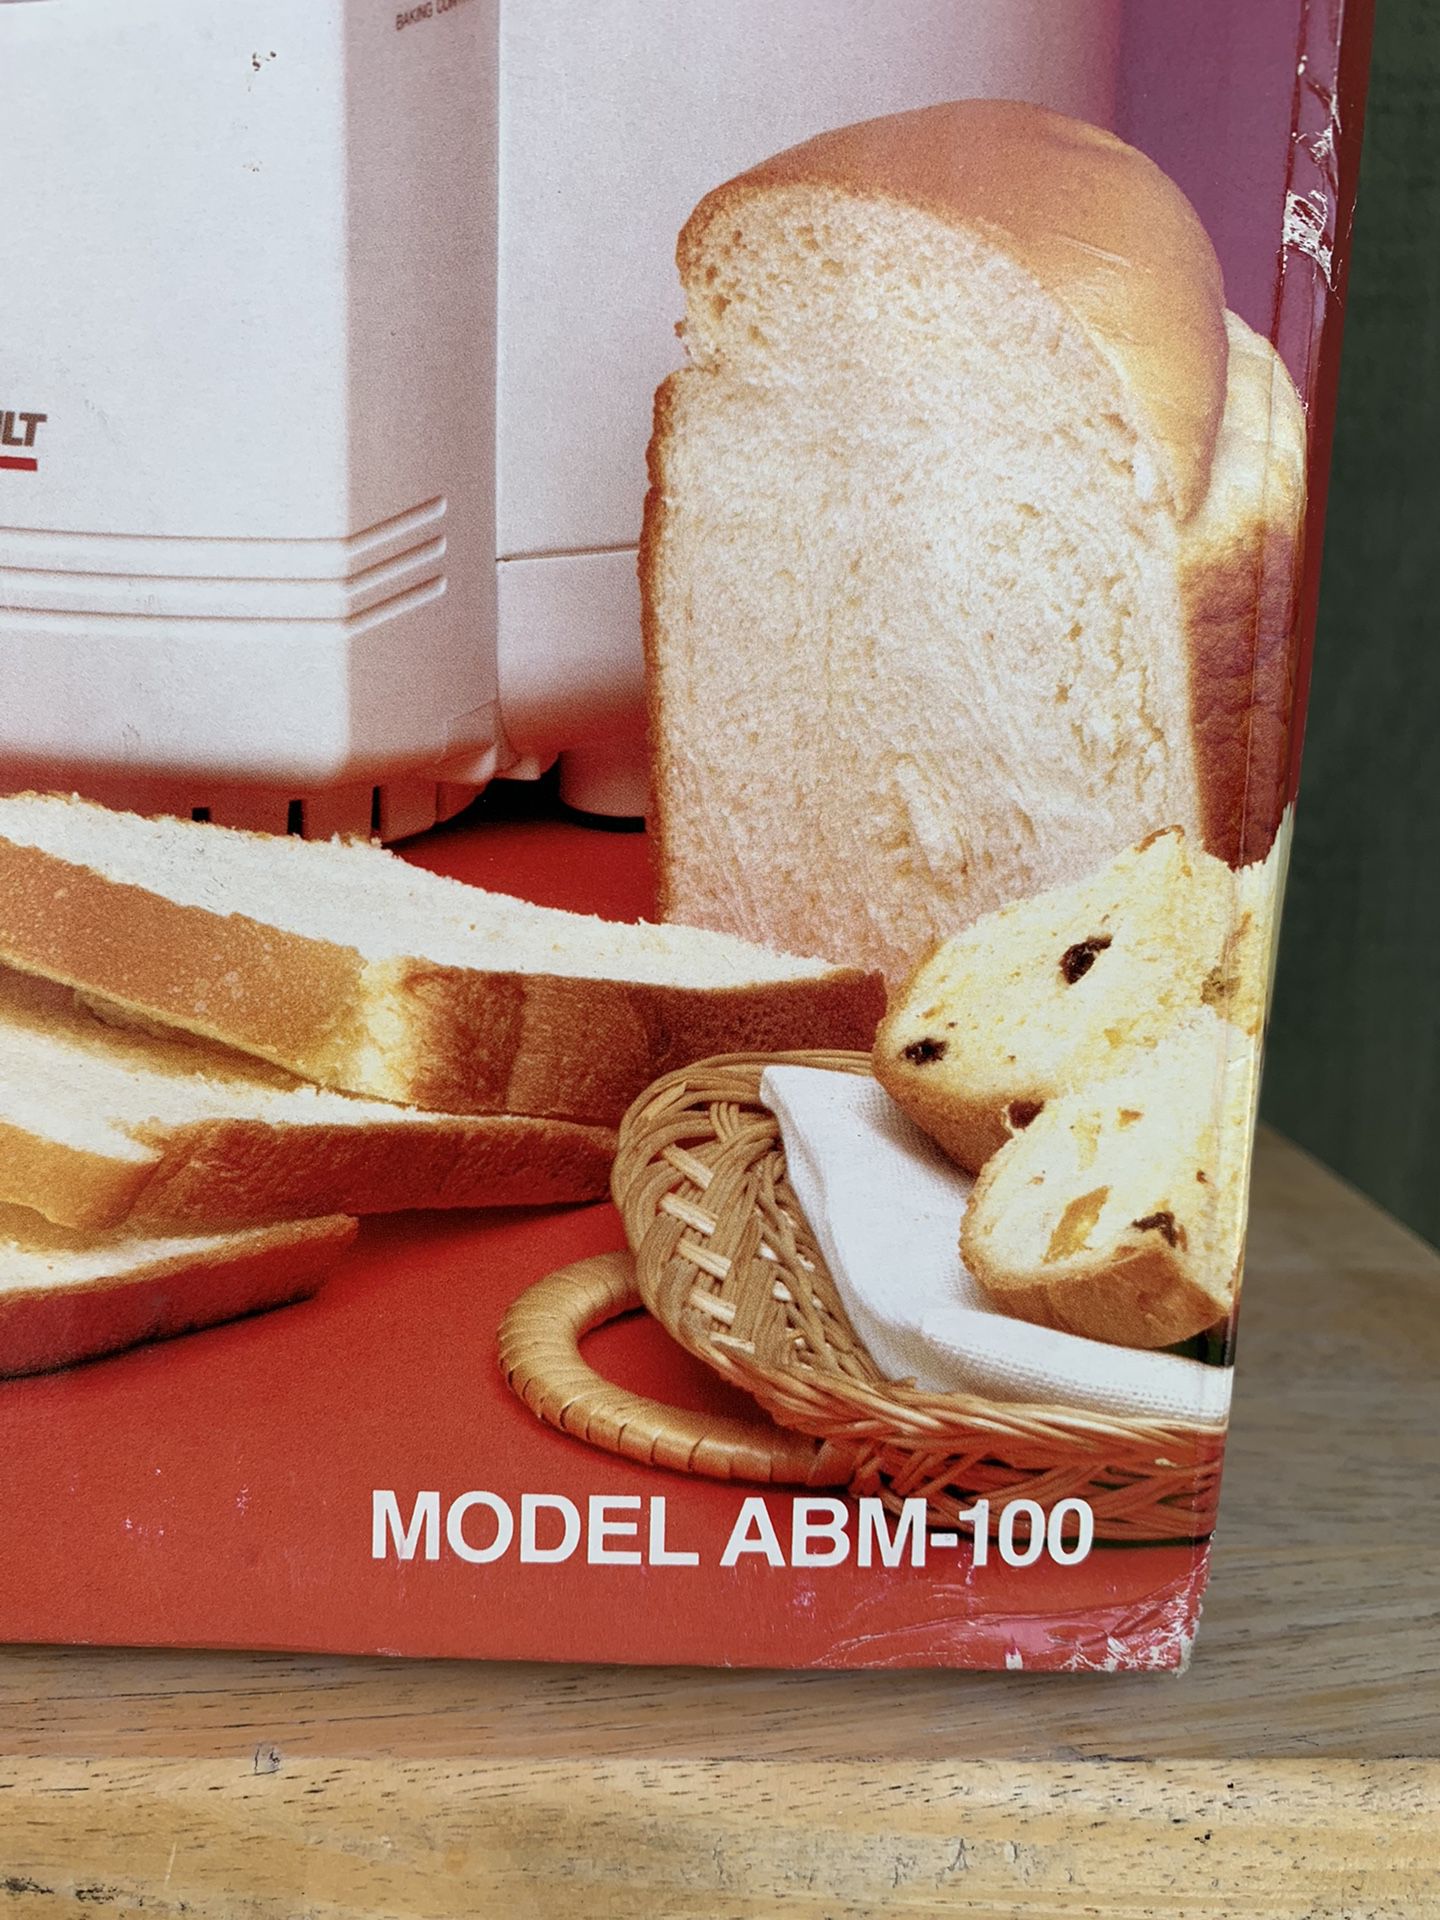 Wel-Bilt Bread Machine ABM-100-3 White Dome Top 2 Lb.Bread Maker